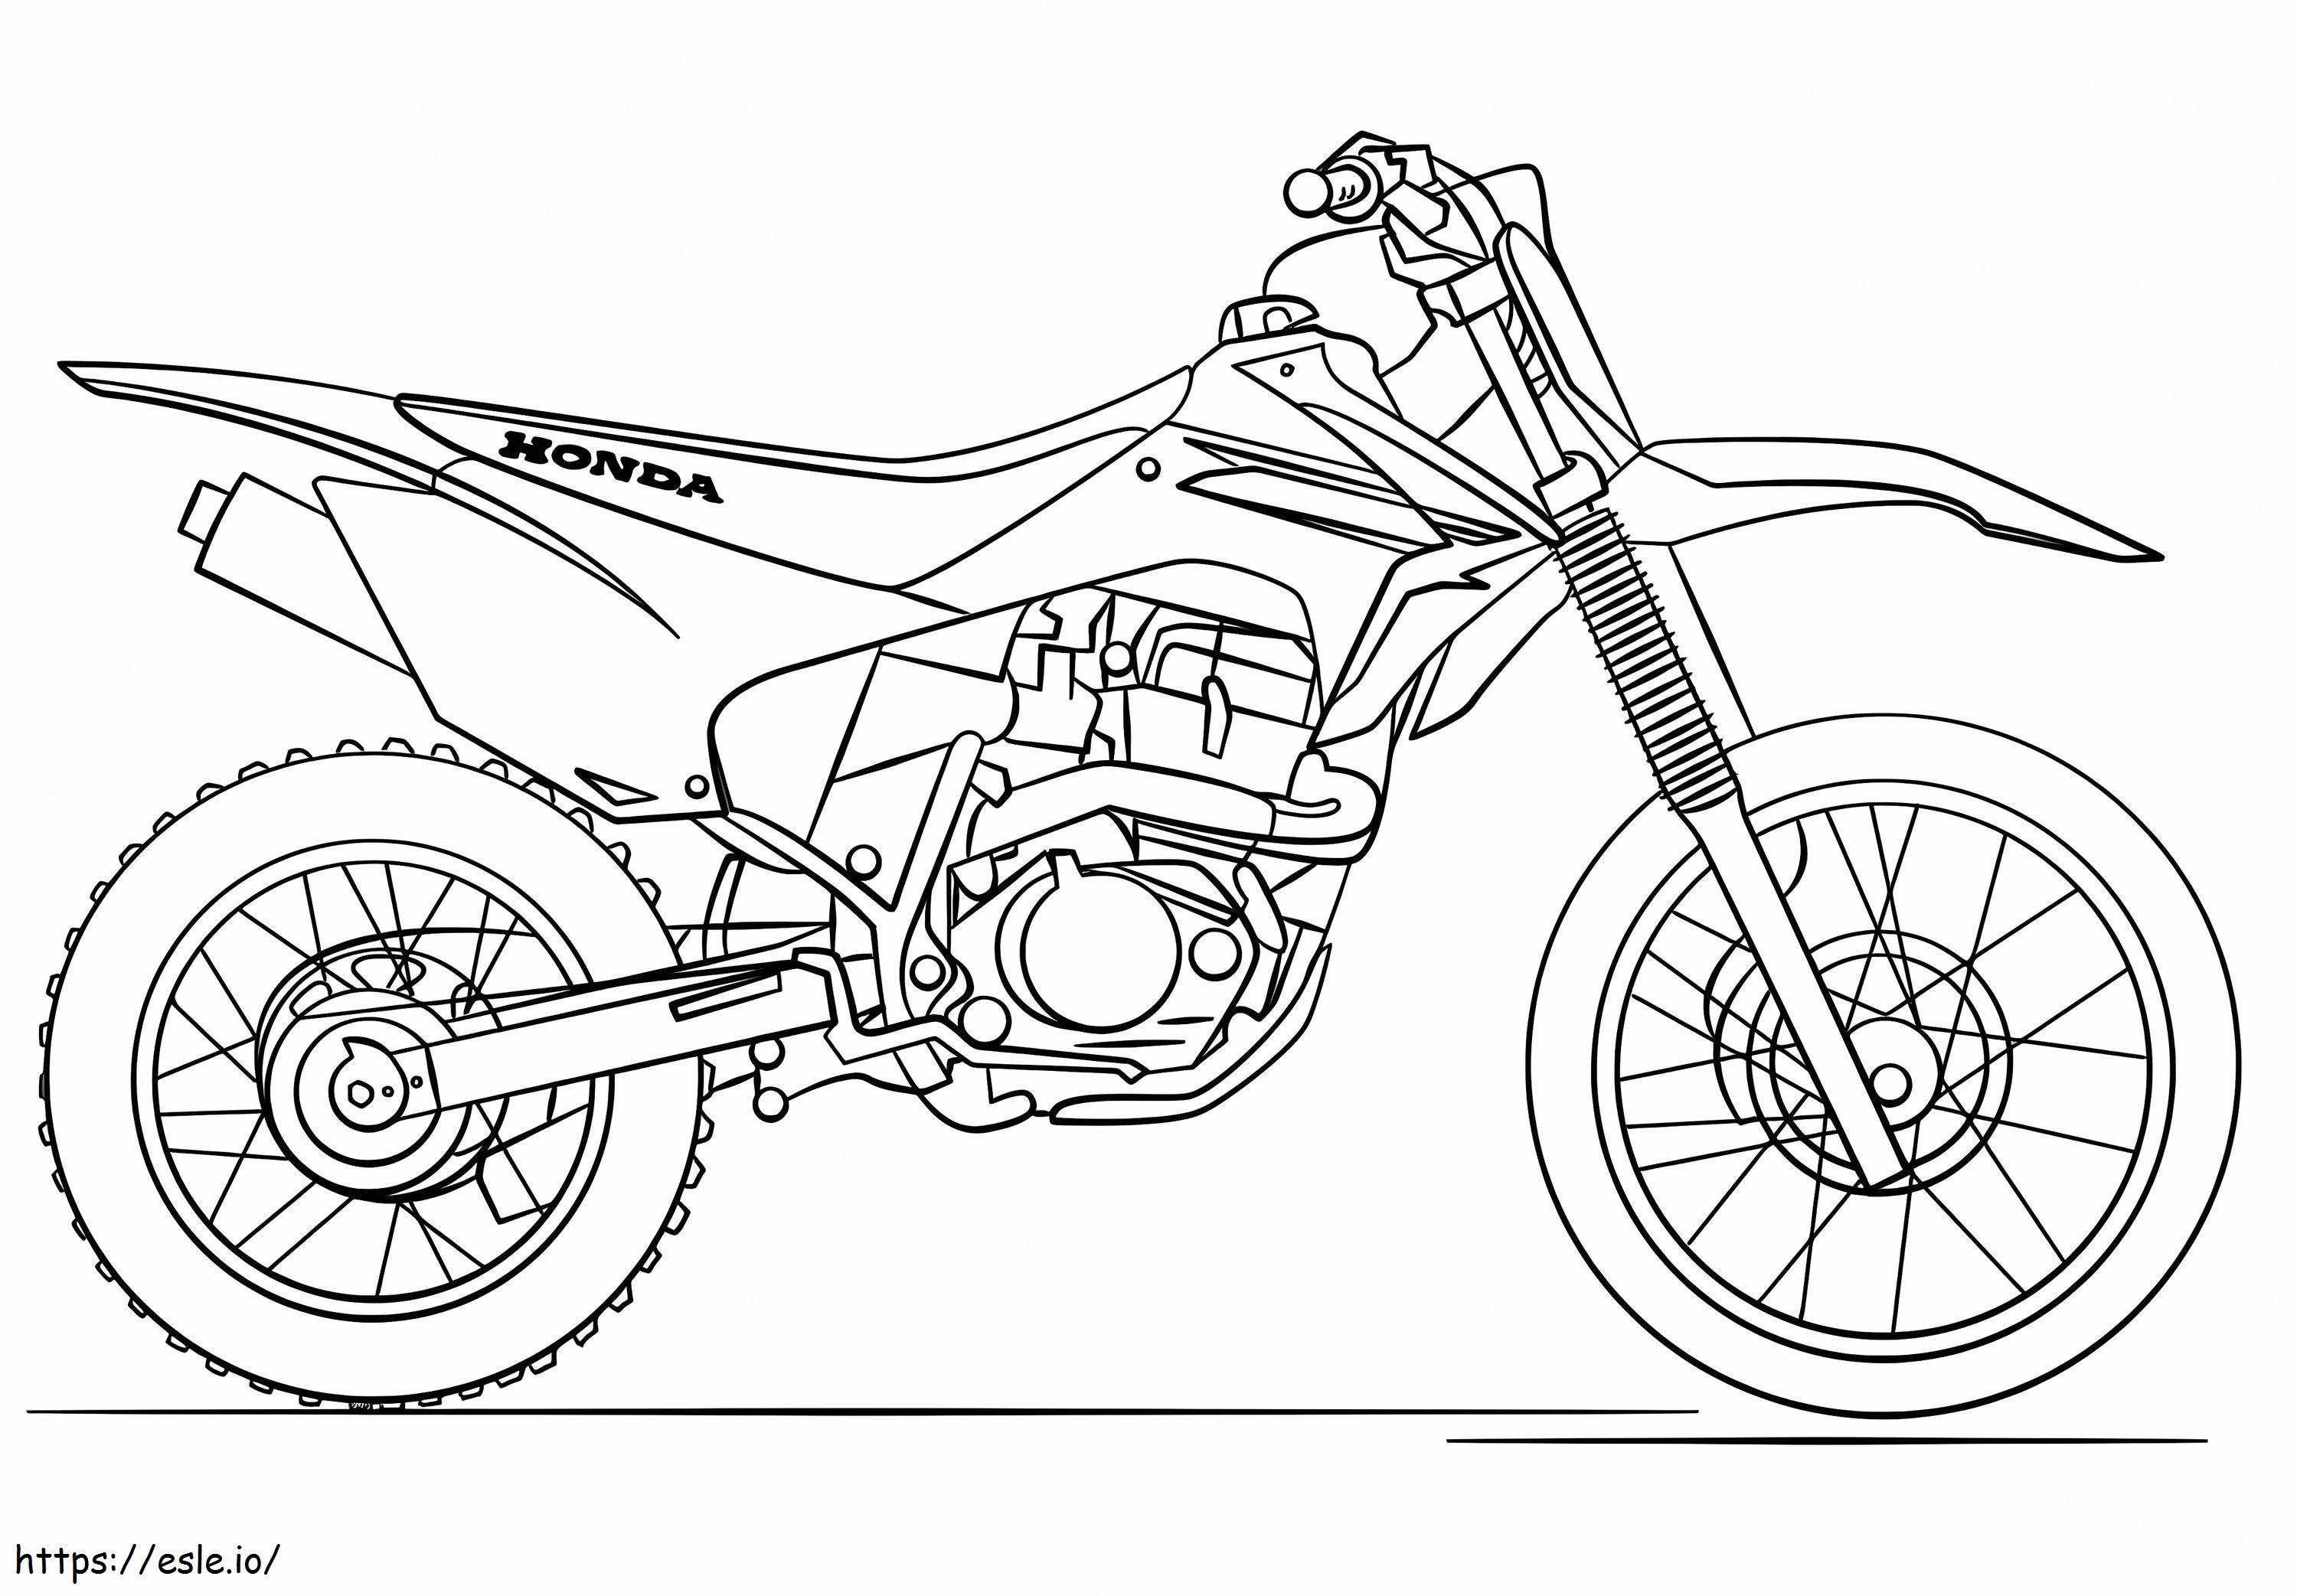 Sepeda Motor Honda Gambar Mewarnai